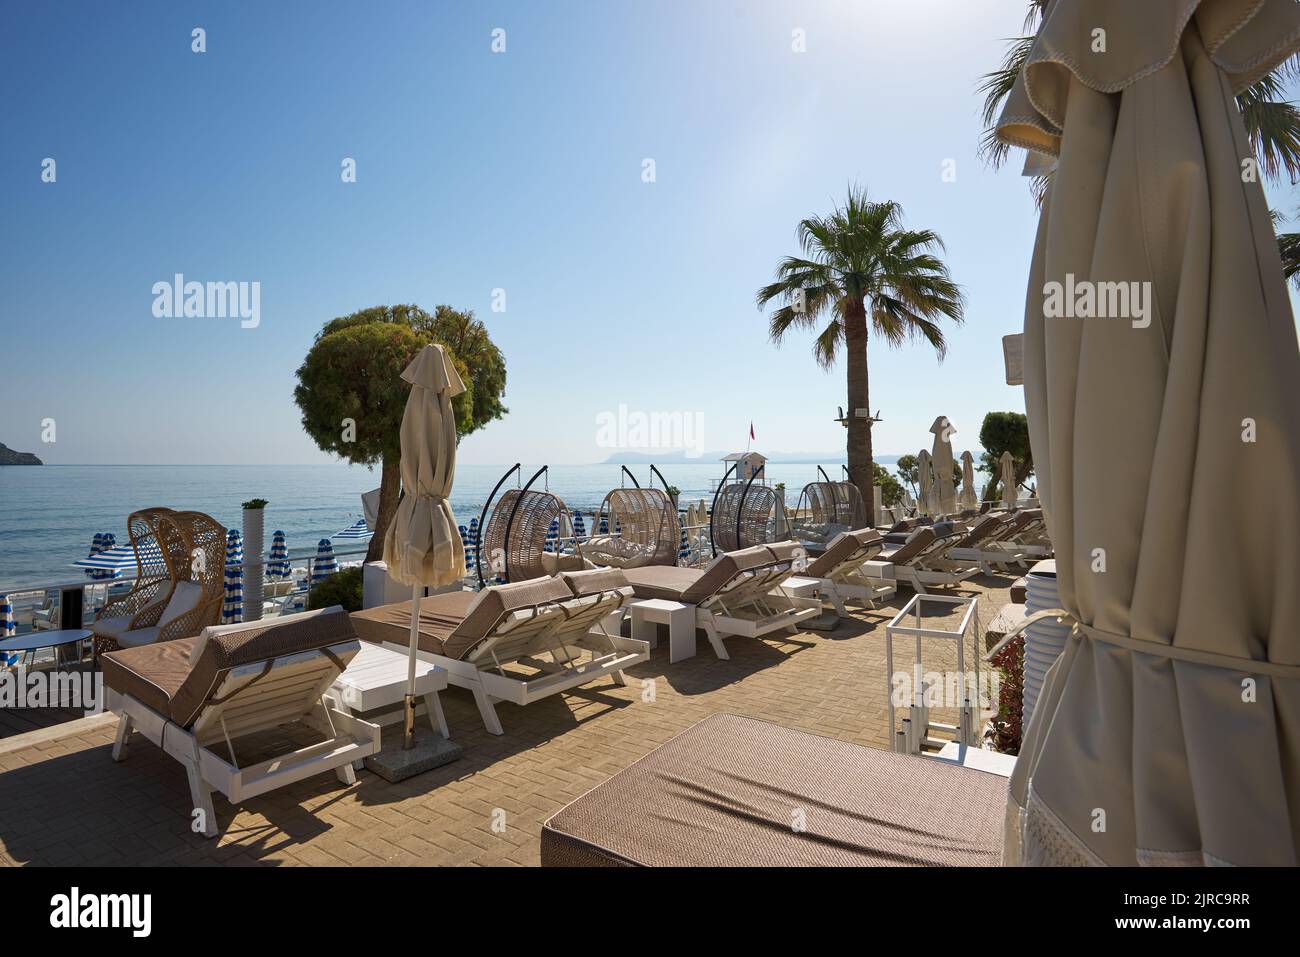 Una playa preciosa y vacía con sombrillas y tumbonas. Perfecto destino de vacaciones de verano en Creta - Grecia Foto de stock